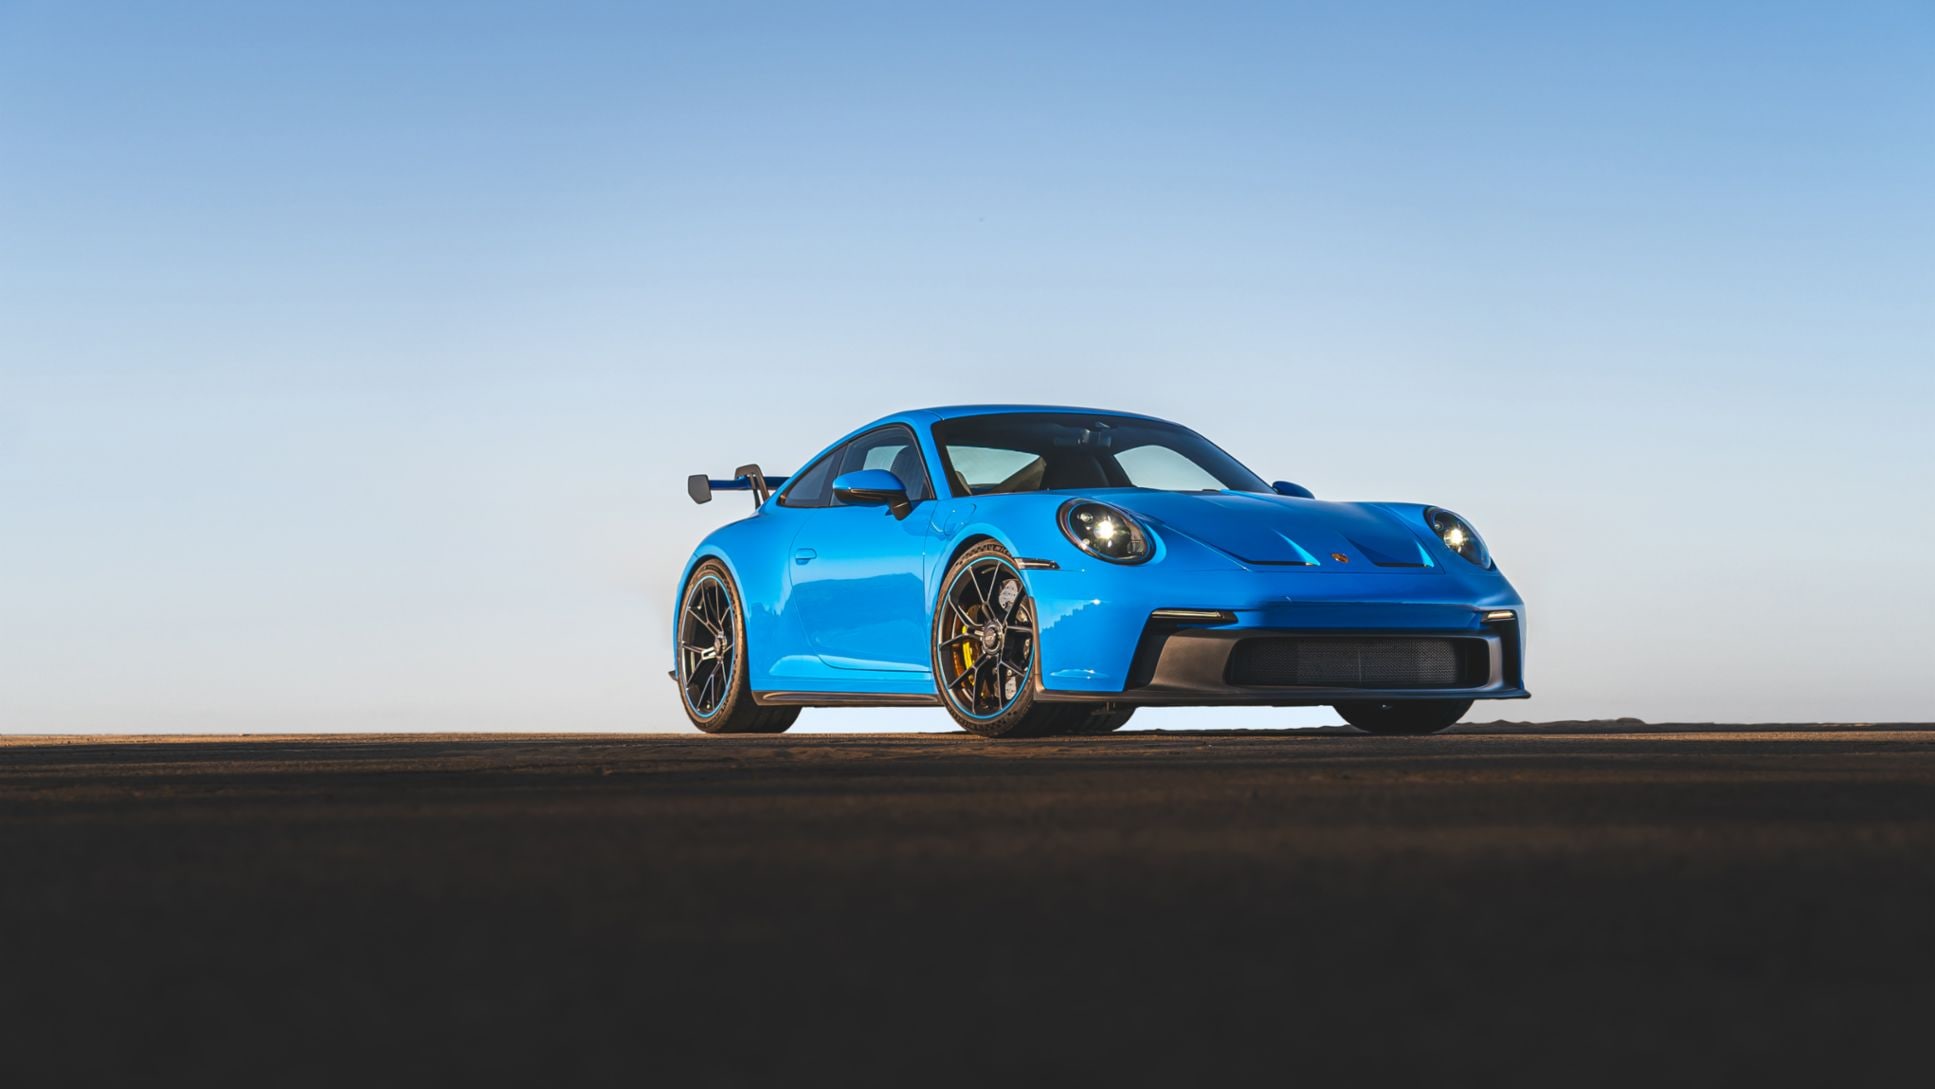 Il matrimonio tra Porsche e Android Auto: dal 2022 sui nuovi modelli, anche CarPlay wireless